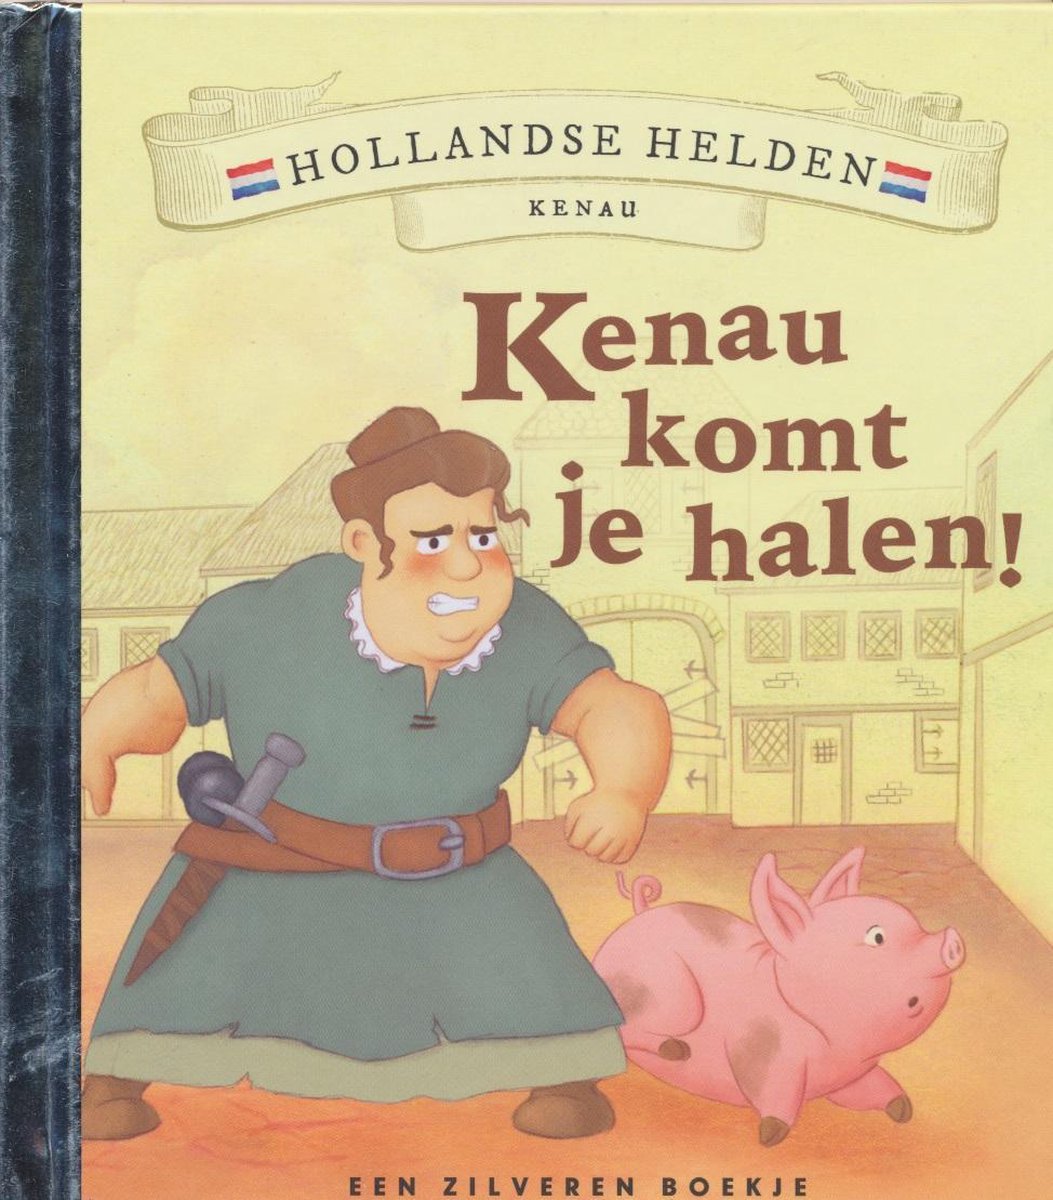 Joris en het varken / Hollandse helden